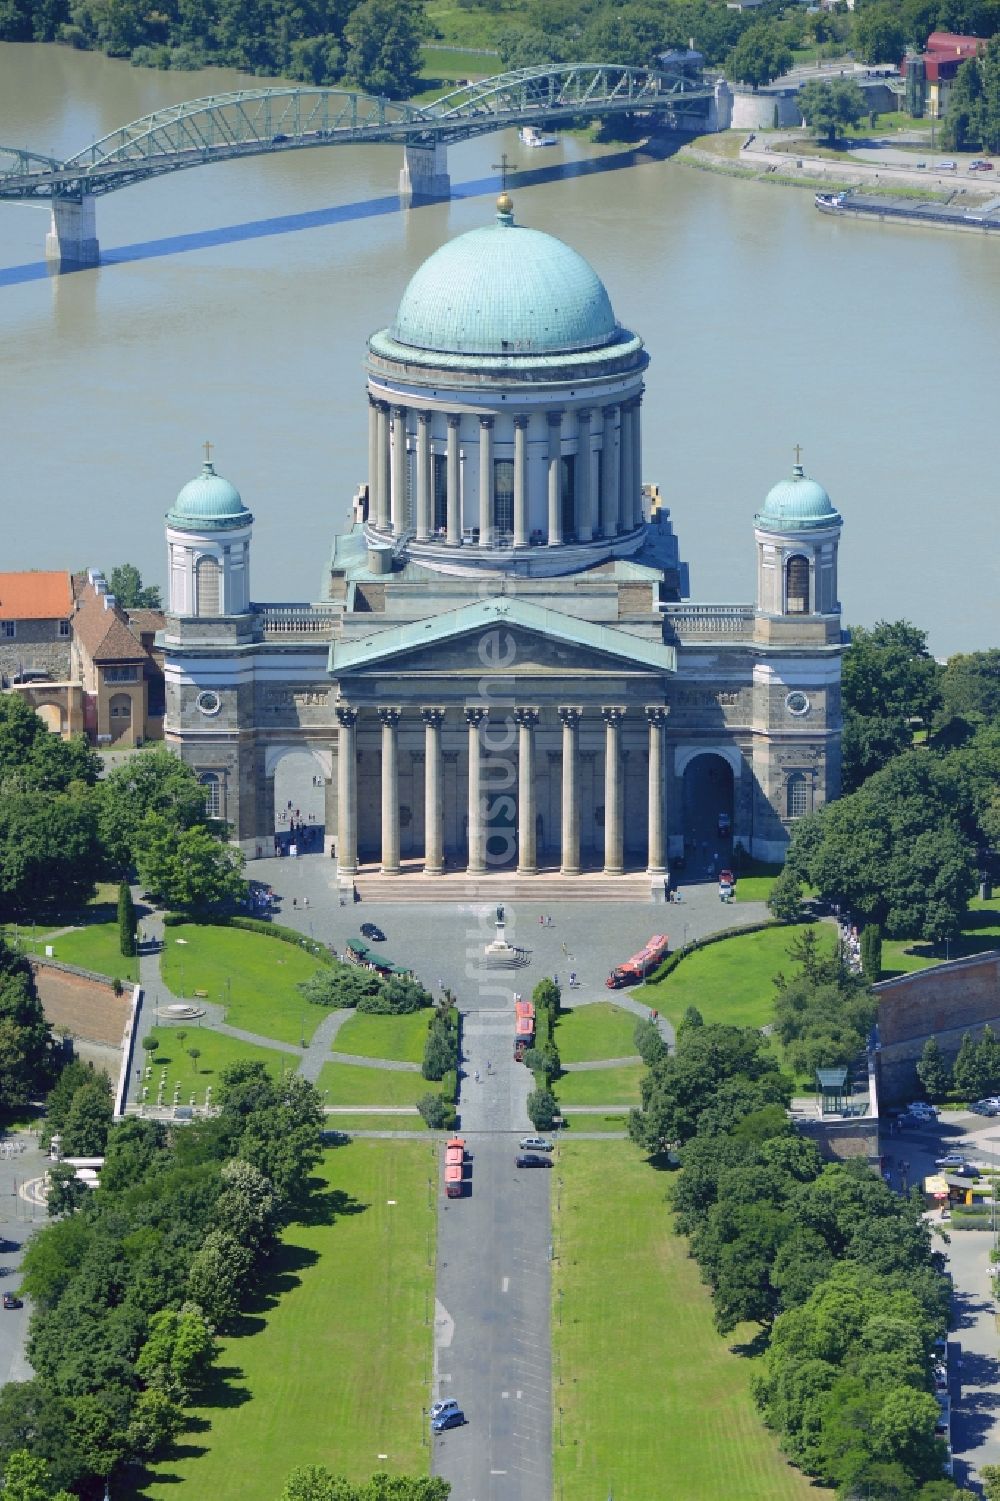 Esztergom aus der Vogelperspektive: Kathedrale Sankt-Adalbert-Kathedrale in Esztergom in Komarom-Esztergom, Ungarn